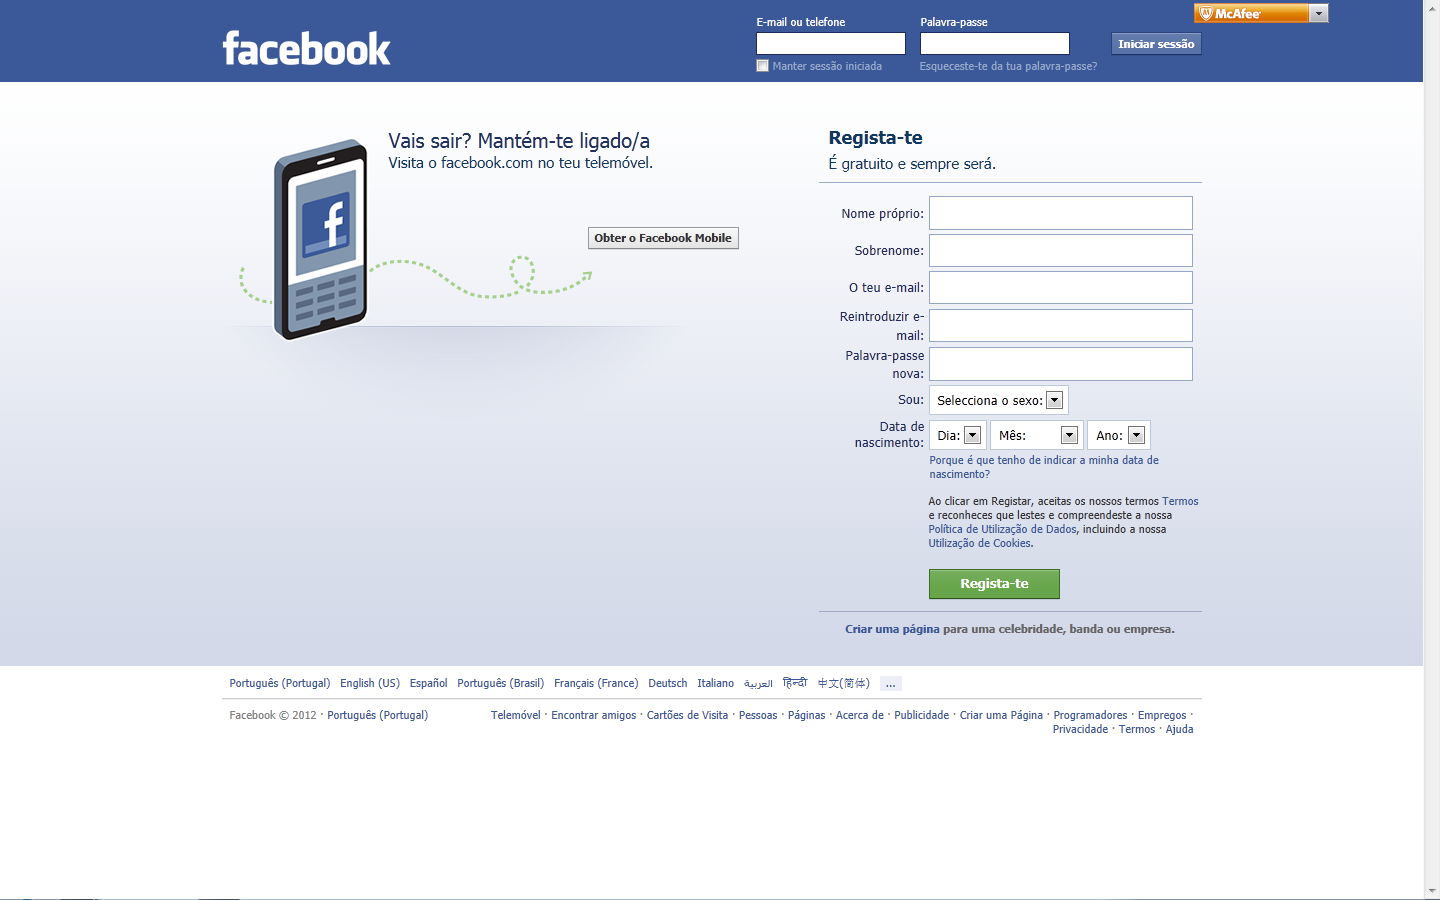 Esta é a primeira imagem que se tem do Facebook, quando se abre o site como um utilizador com perfil ativo.